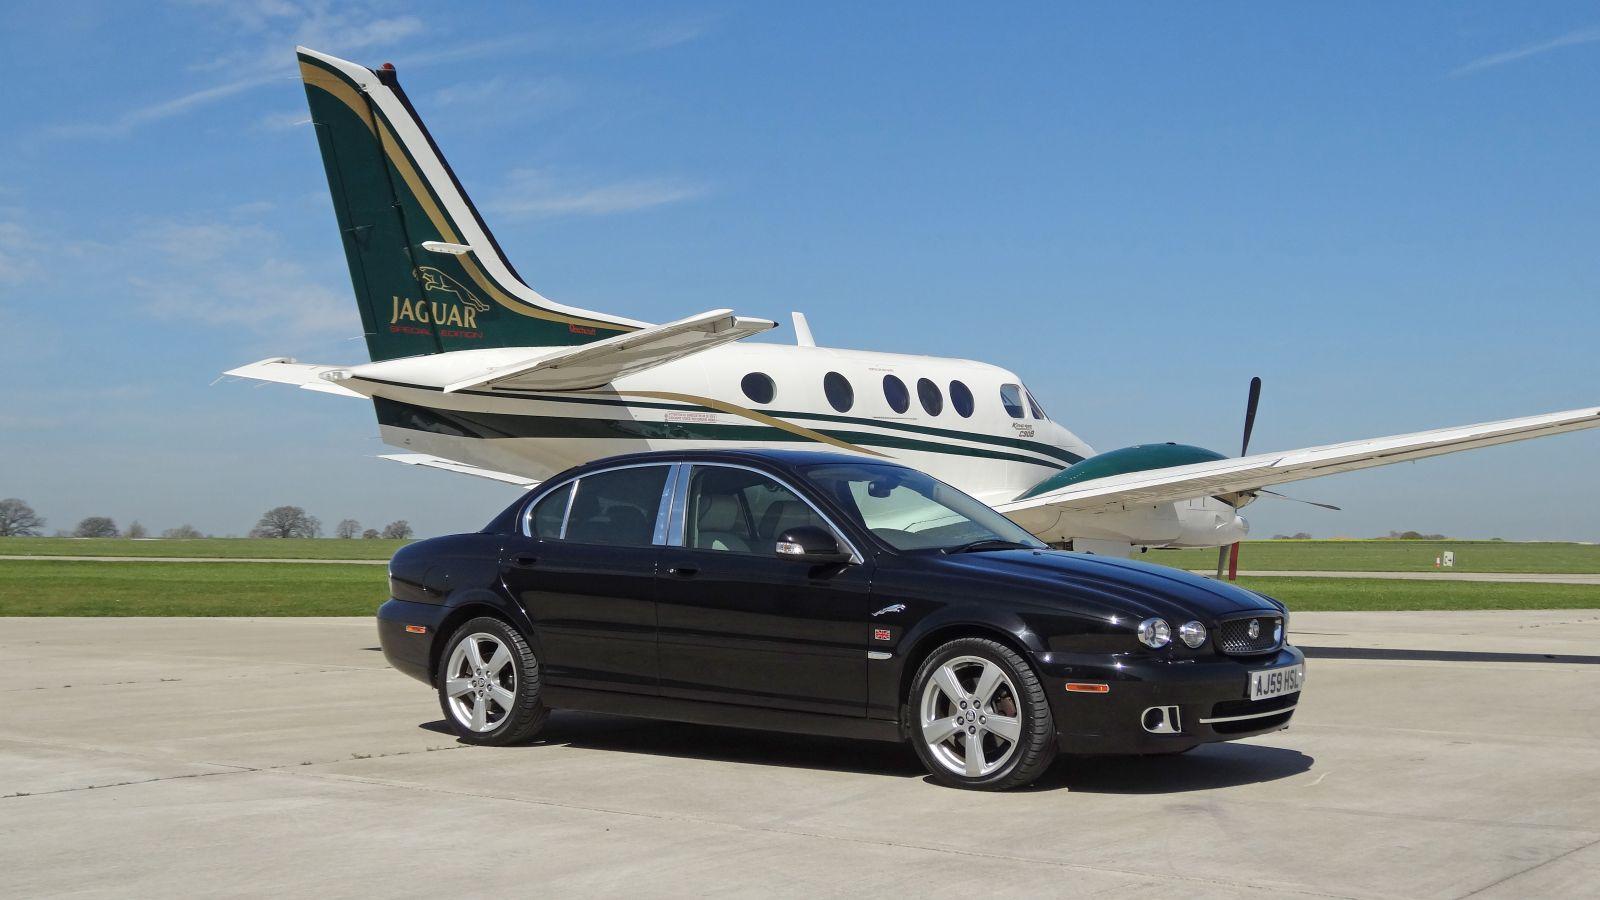 Jaguar Car and Aircraft 3